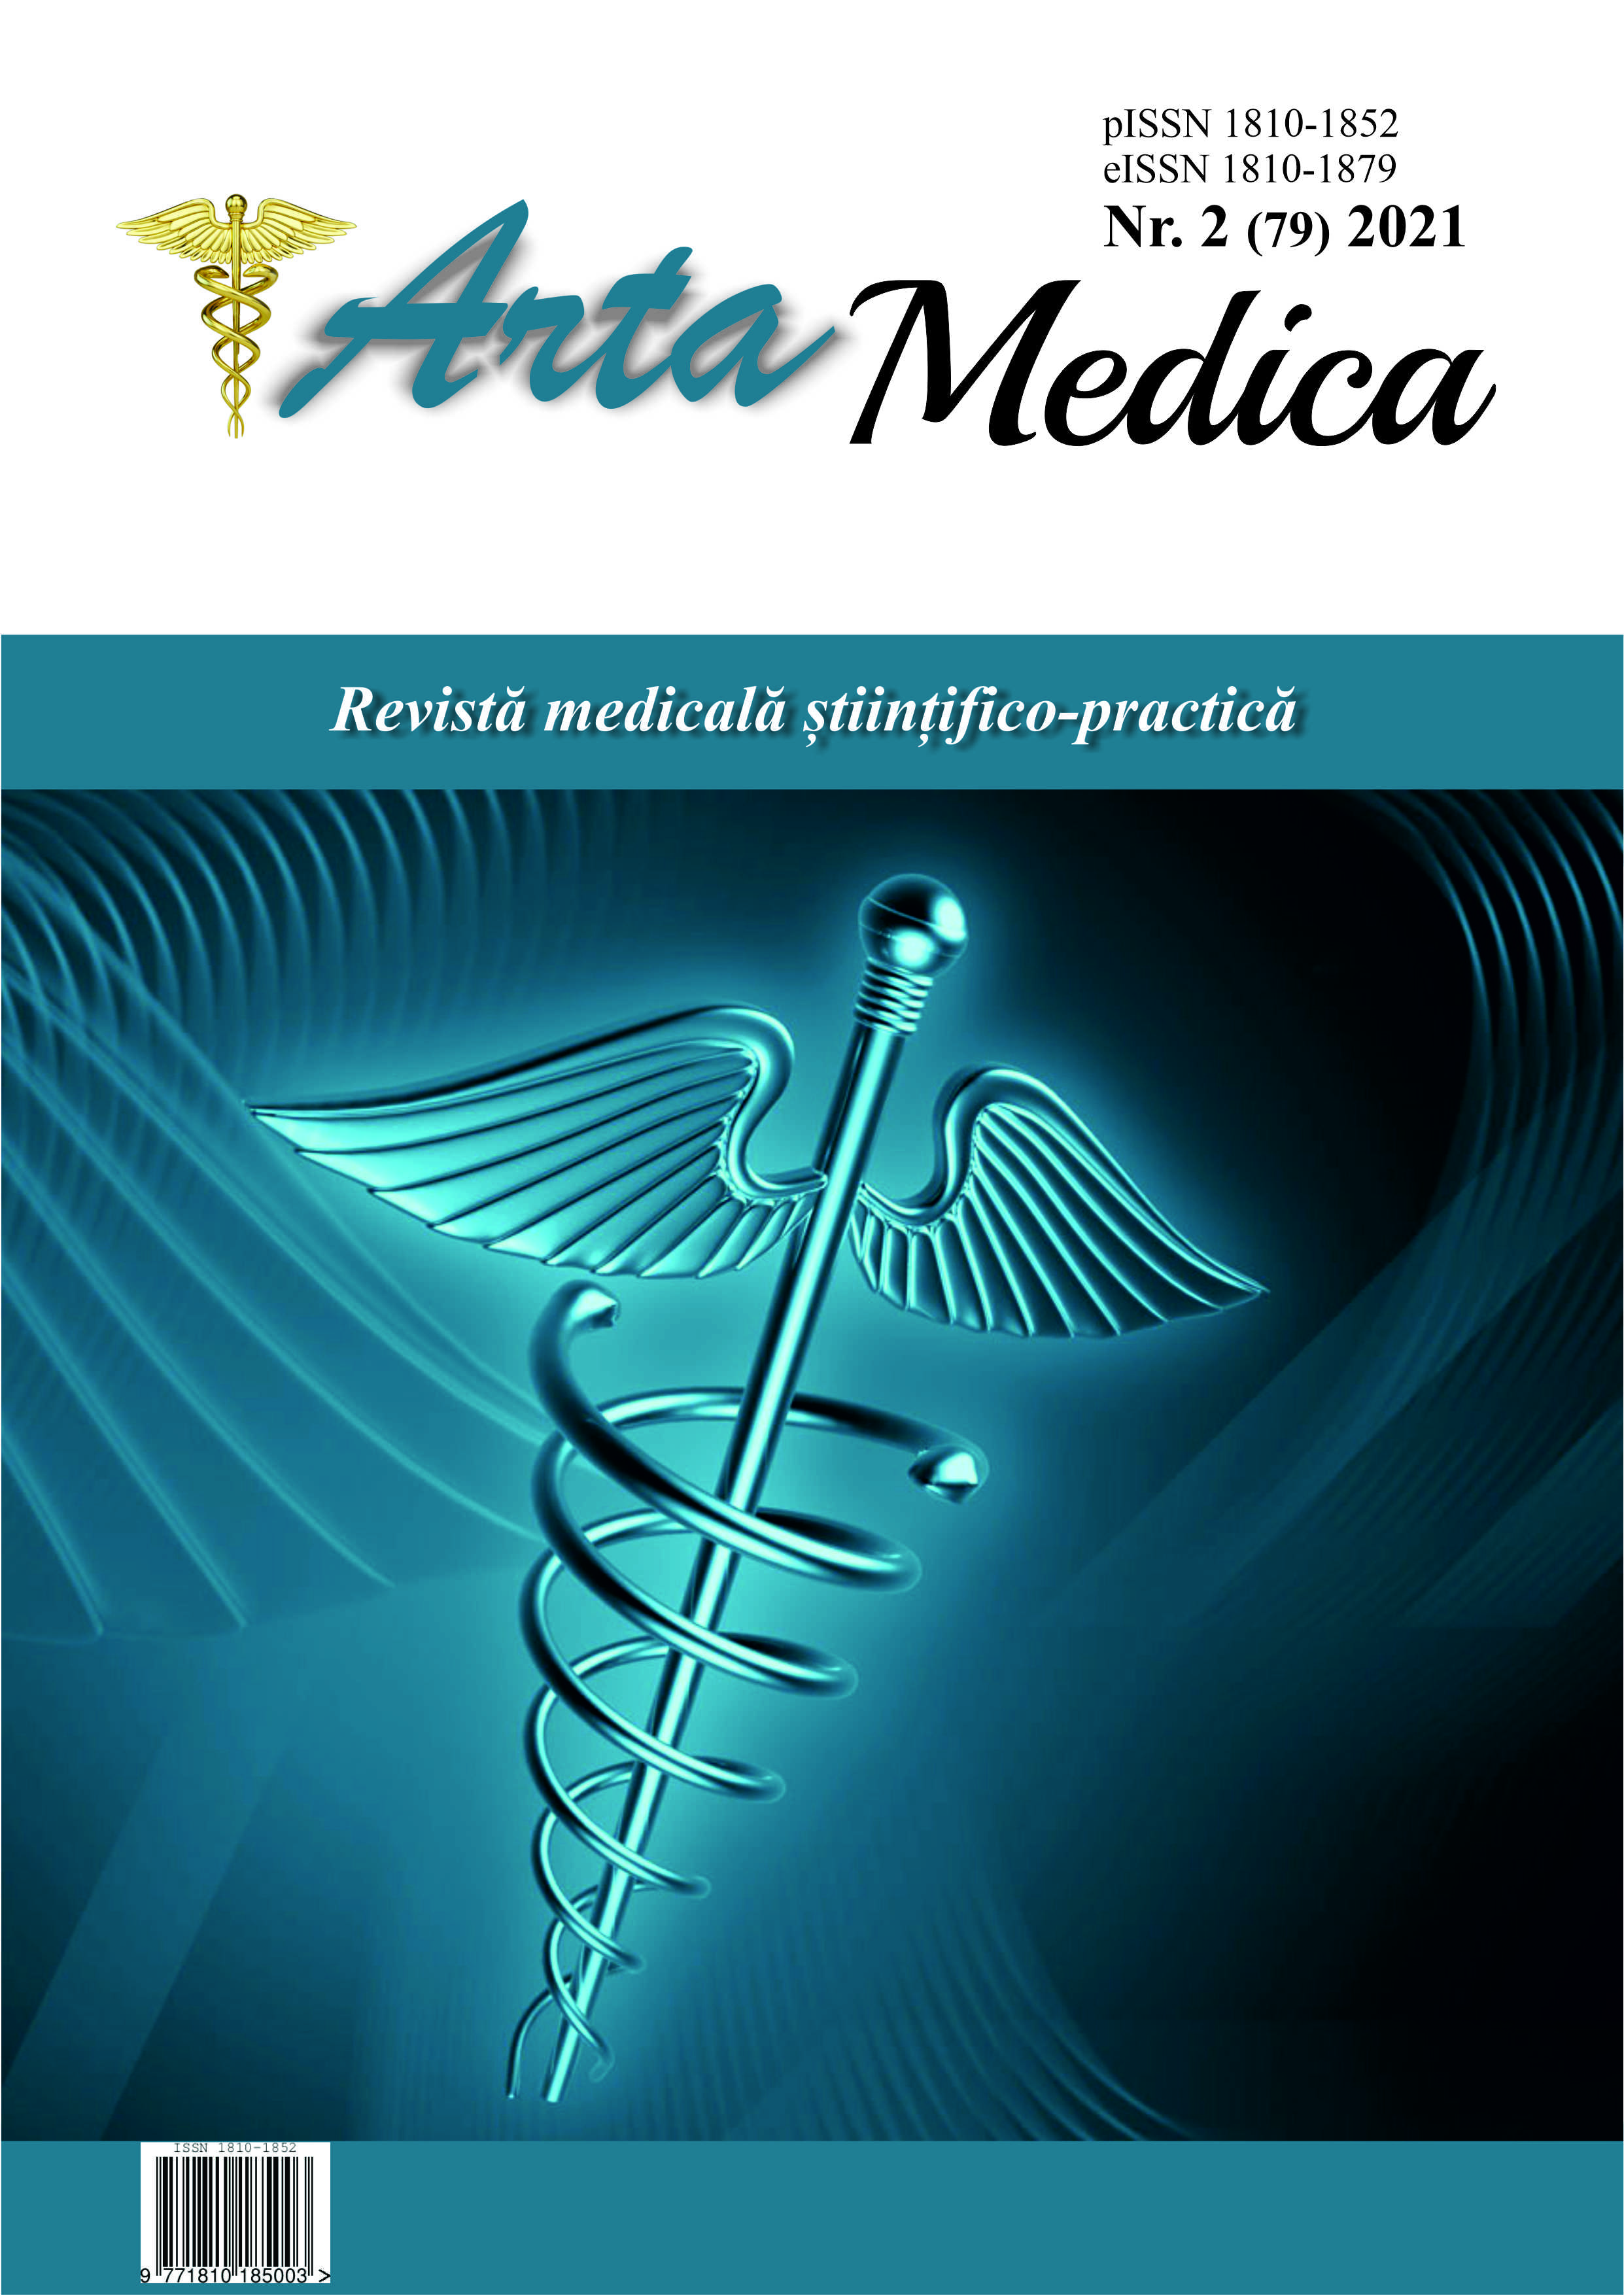 					View Vol. 79 No. 2 (2021): Arta Medica
				